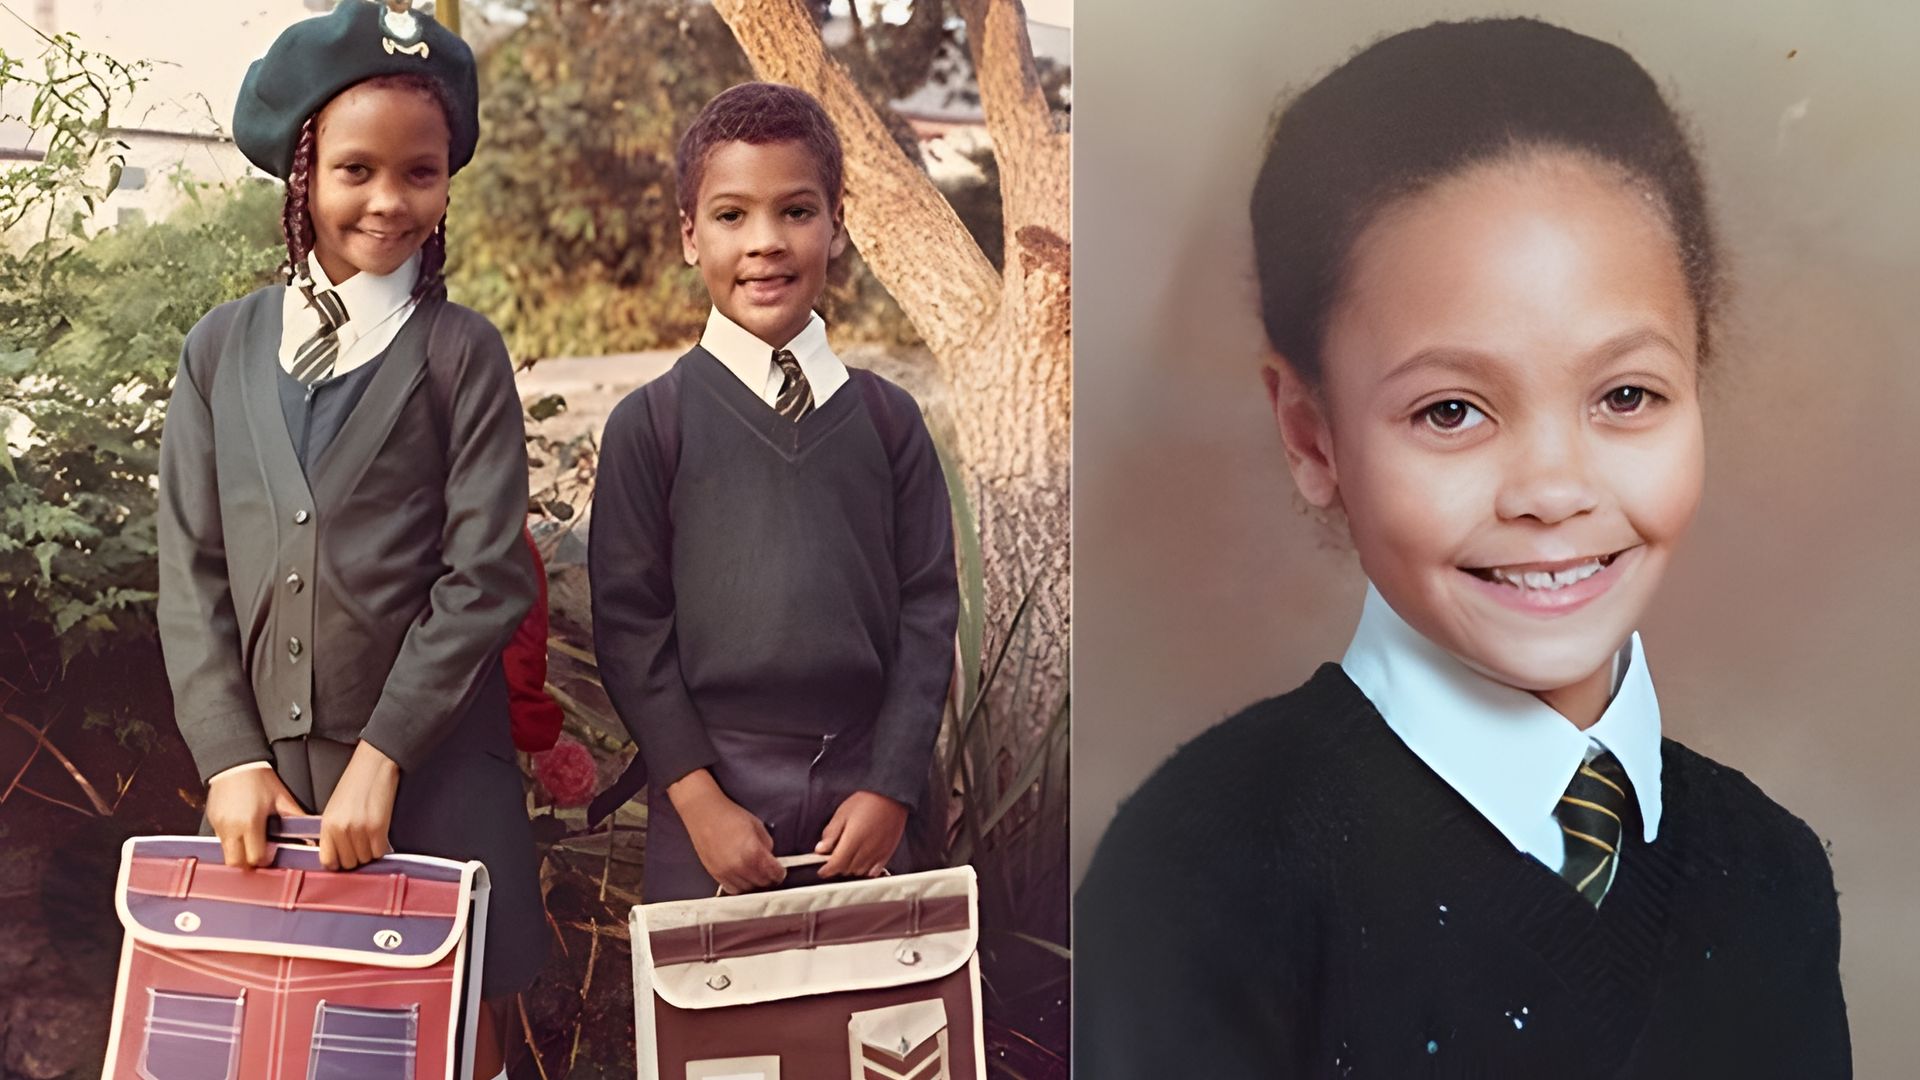 Thandiwe Newton during her school years